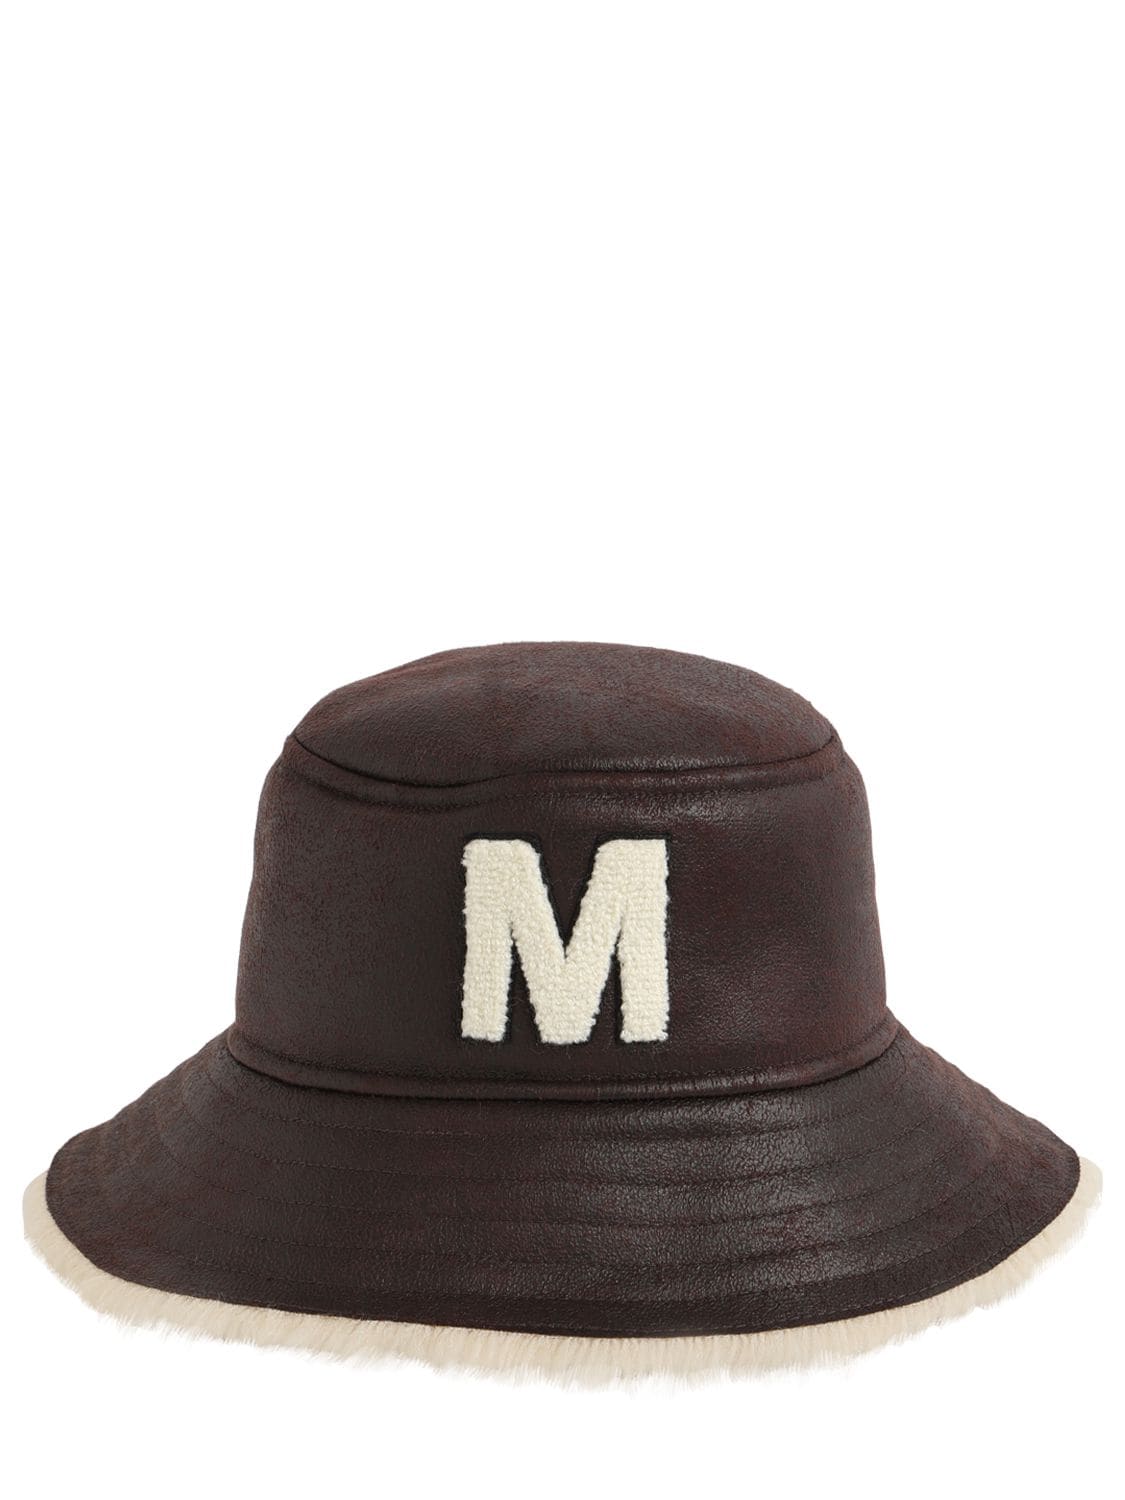 MM6 MAISON MARGIELA FAUX SHEARLING BUCKET HAT